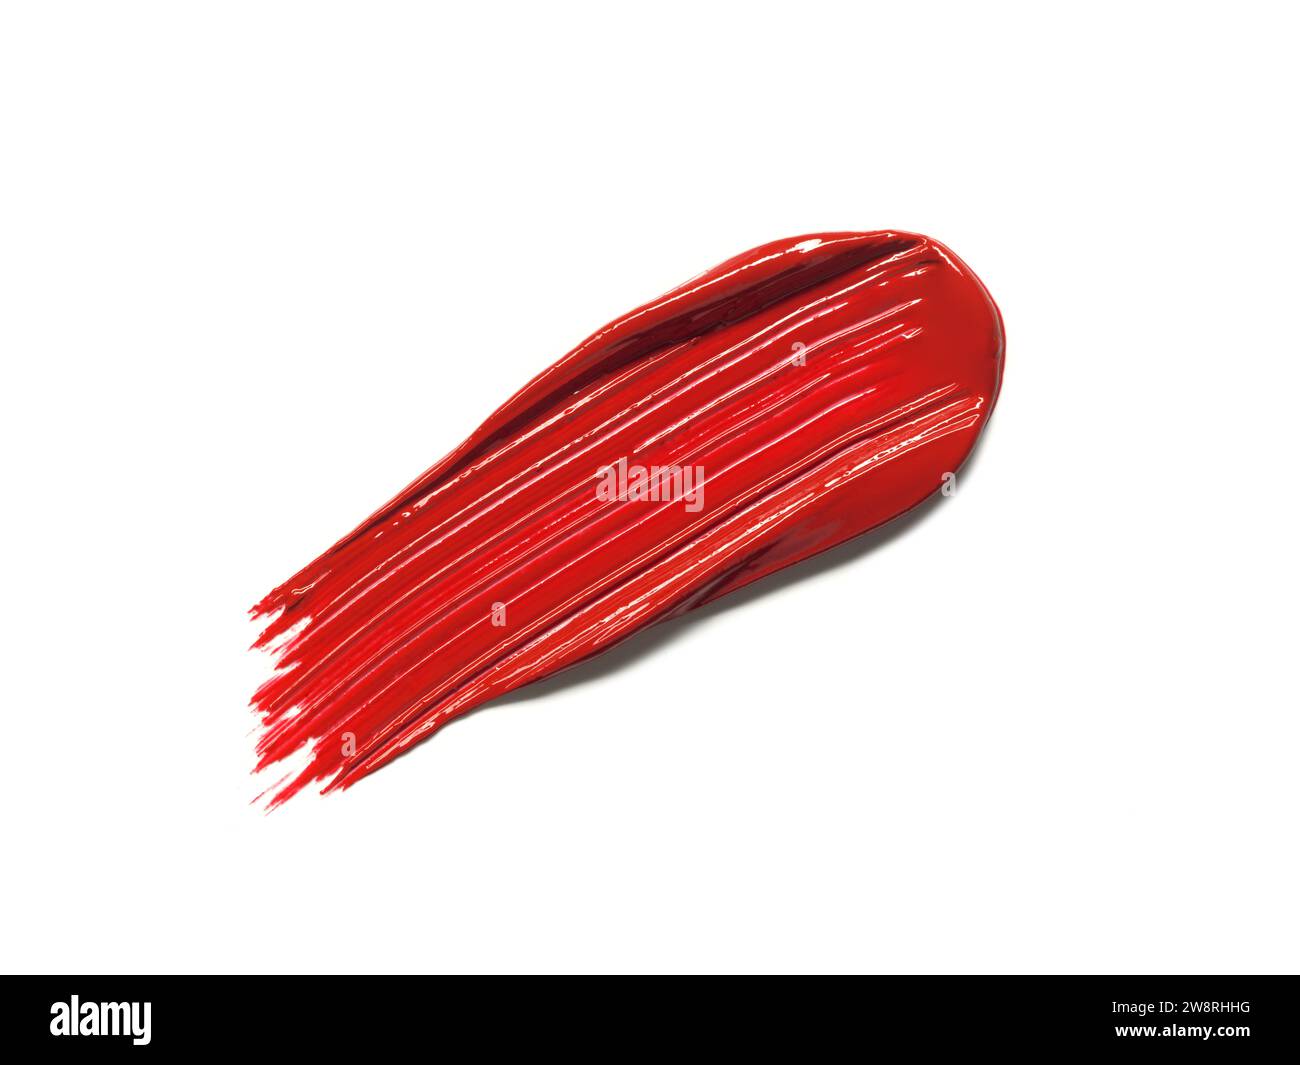 Rossetto rosso, trama lucida, traccia di texture isolata su sfondo bianco. Campione di prodotti cosmetici Foto Stock